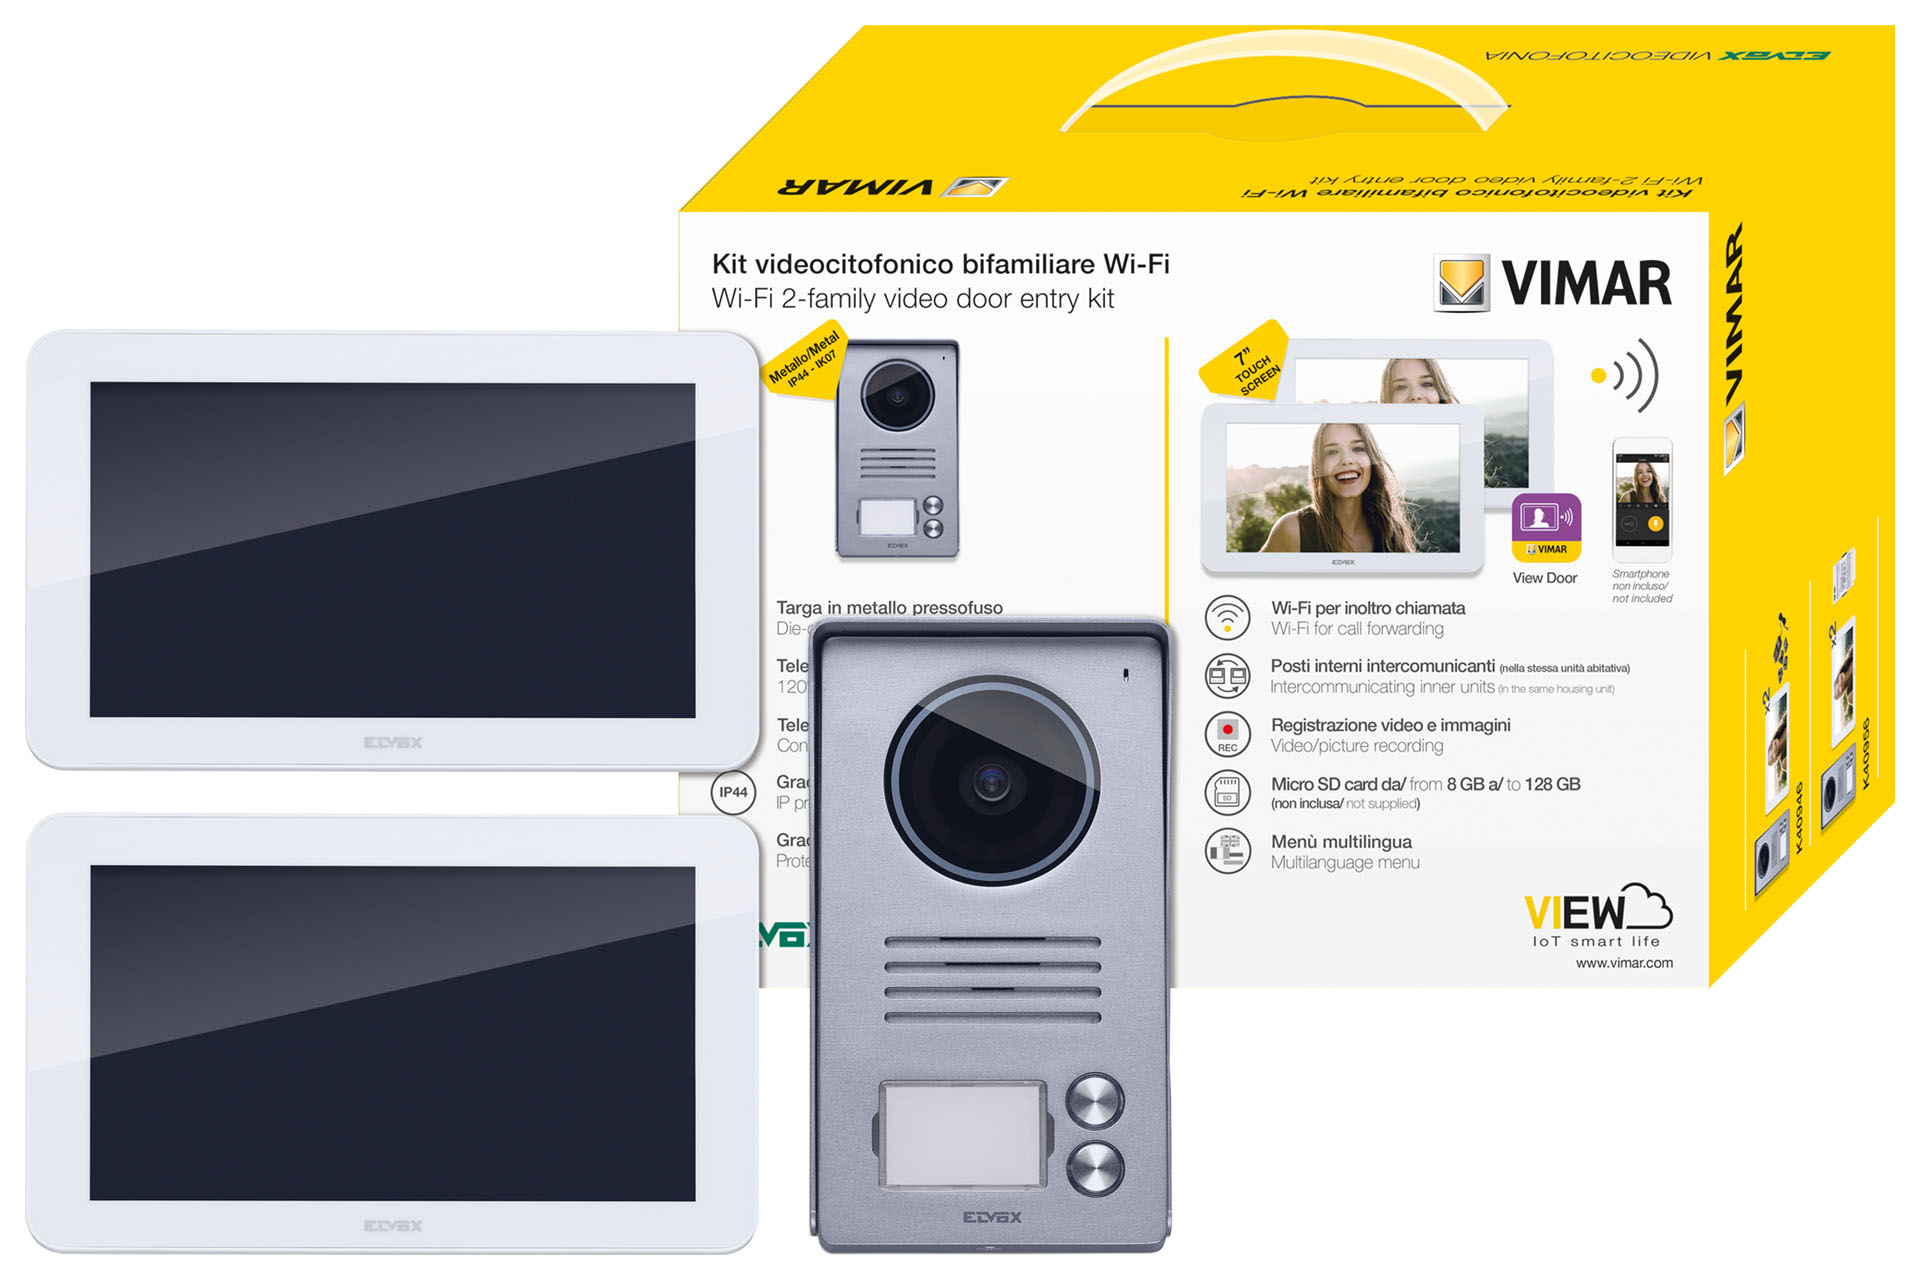 copy of Kit Videocitofono Trifamiliare Elvox